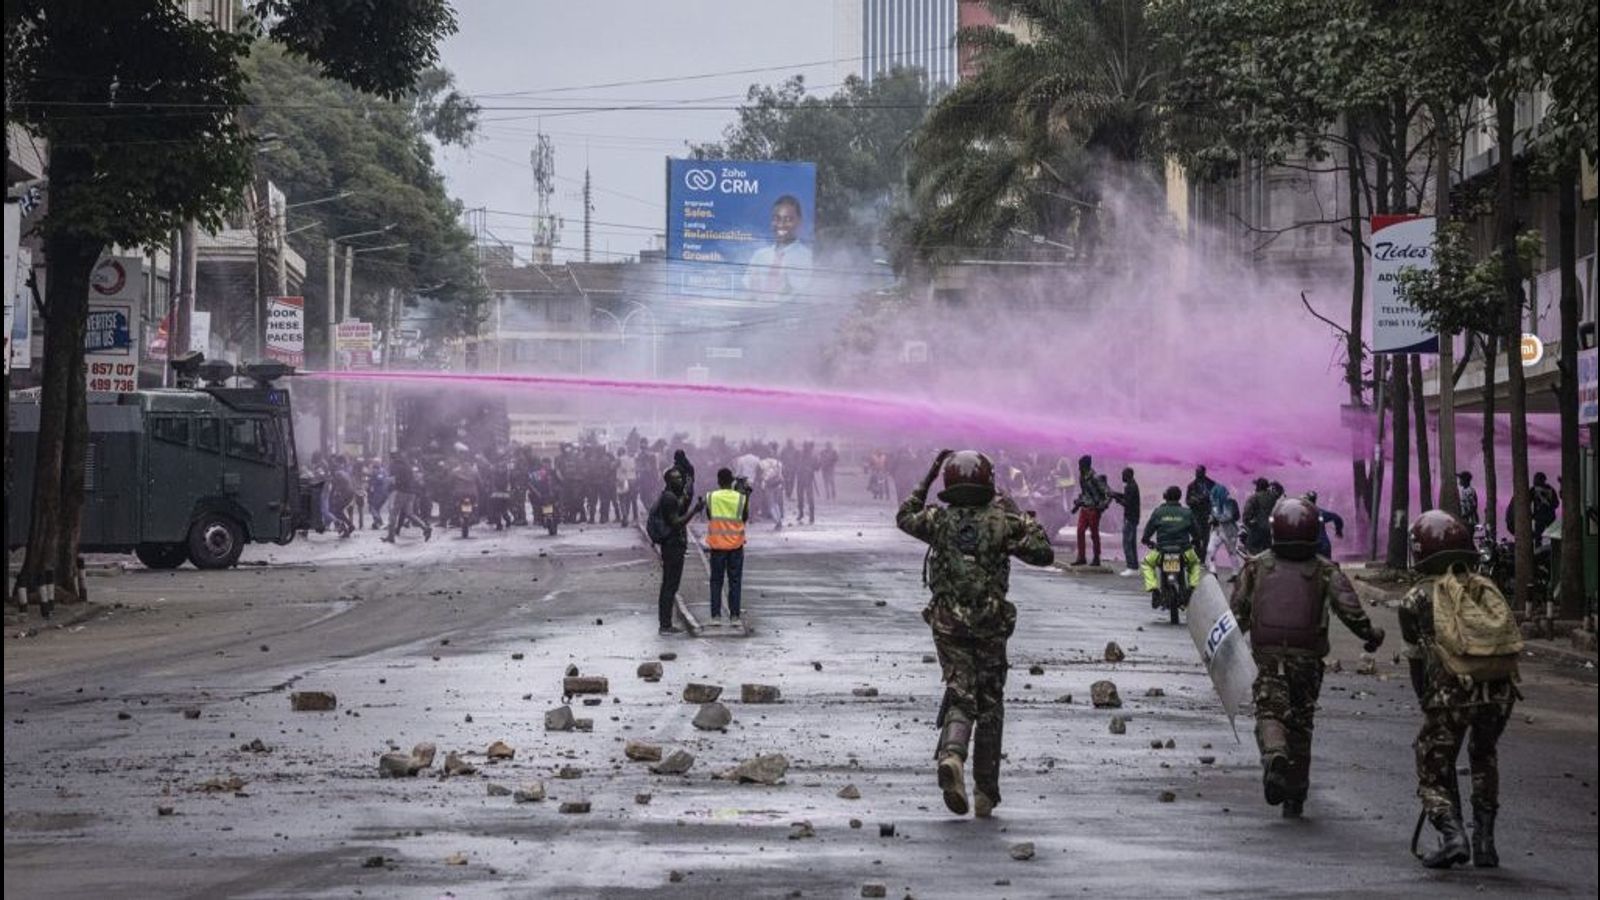 肯尼亚反鲁托抗议活动持续进行，优步司机停工，卡车司机威胁罢工